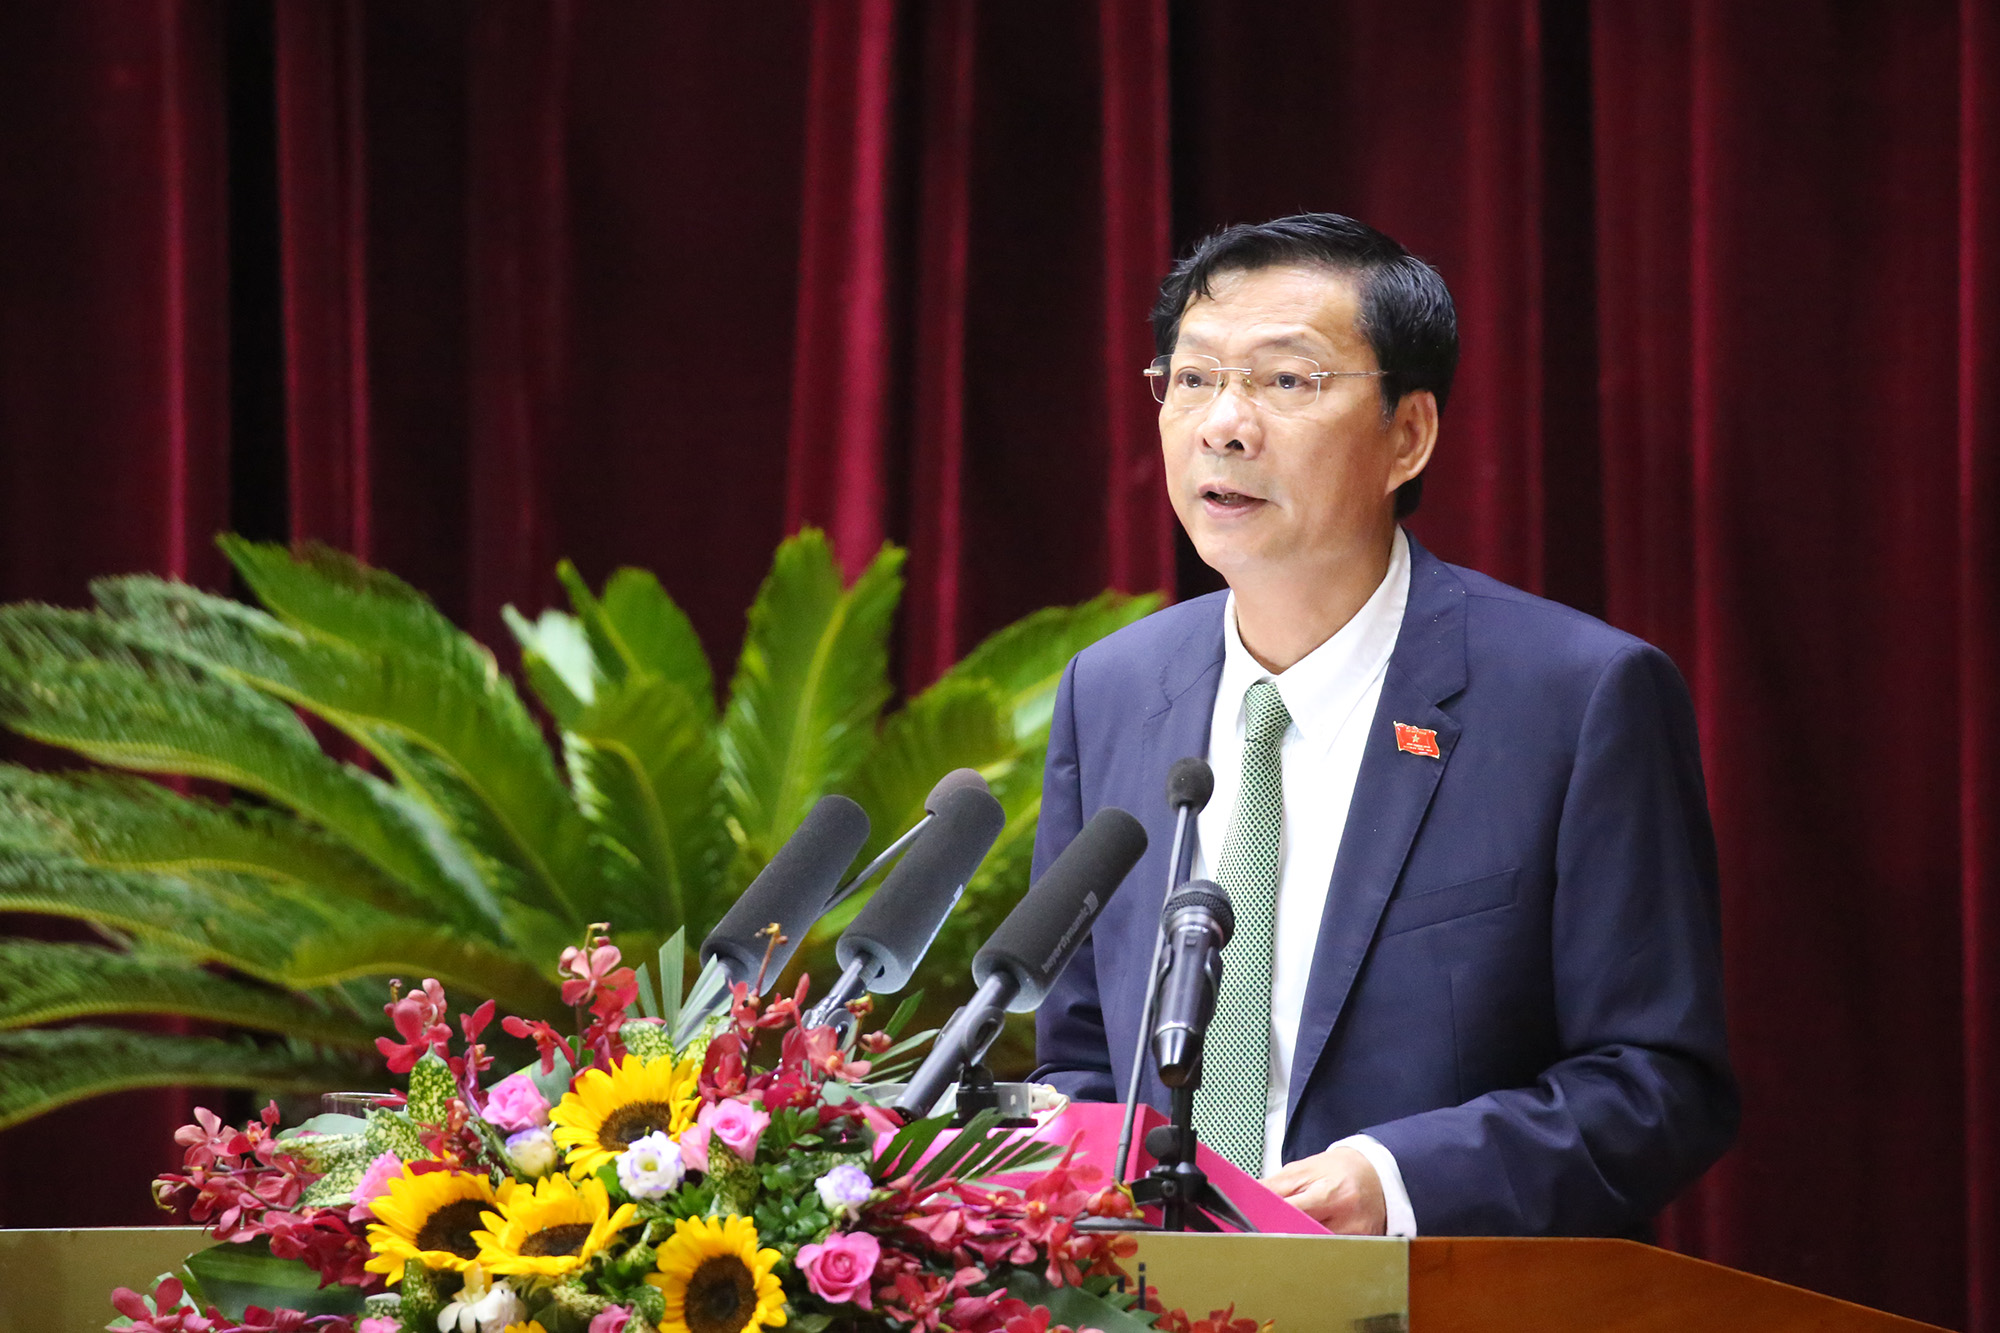 Đồng chí Nguyễn Văn Đọc, Bí thư Tỉnh ủy, Chủ tịch HĐND tỉnh, phát biểu khai mạc kỳ họp.